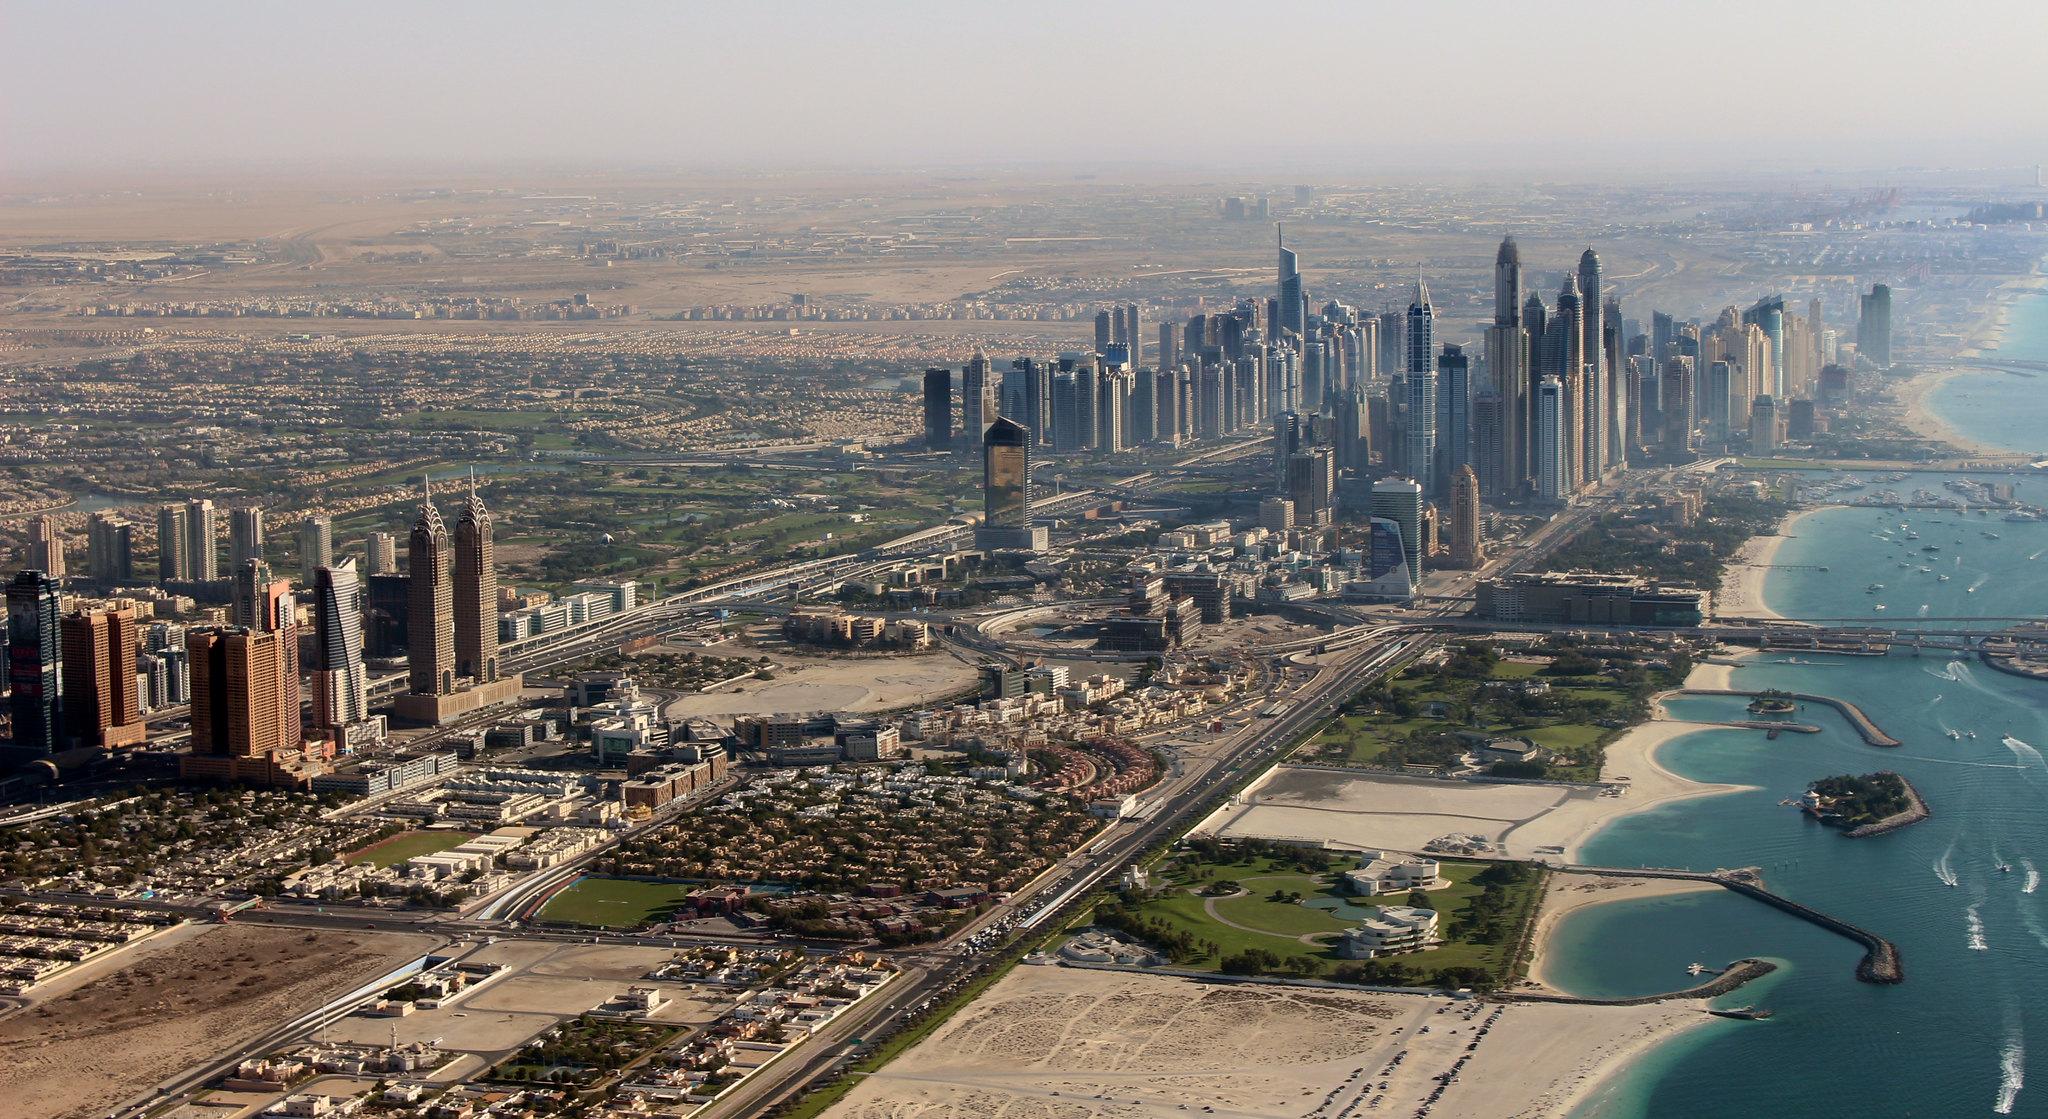 ντουμπάι πανοραμική φωτογραφία με τους ουρανοξύστες και τον πύργο μπουρτζ χαλίφα να ξεχωρίζει